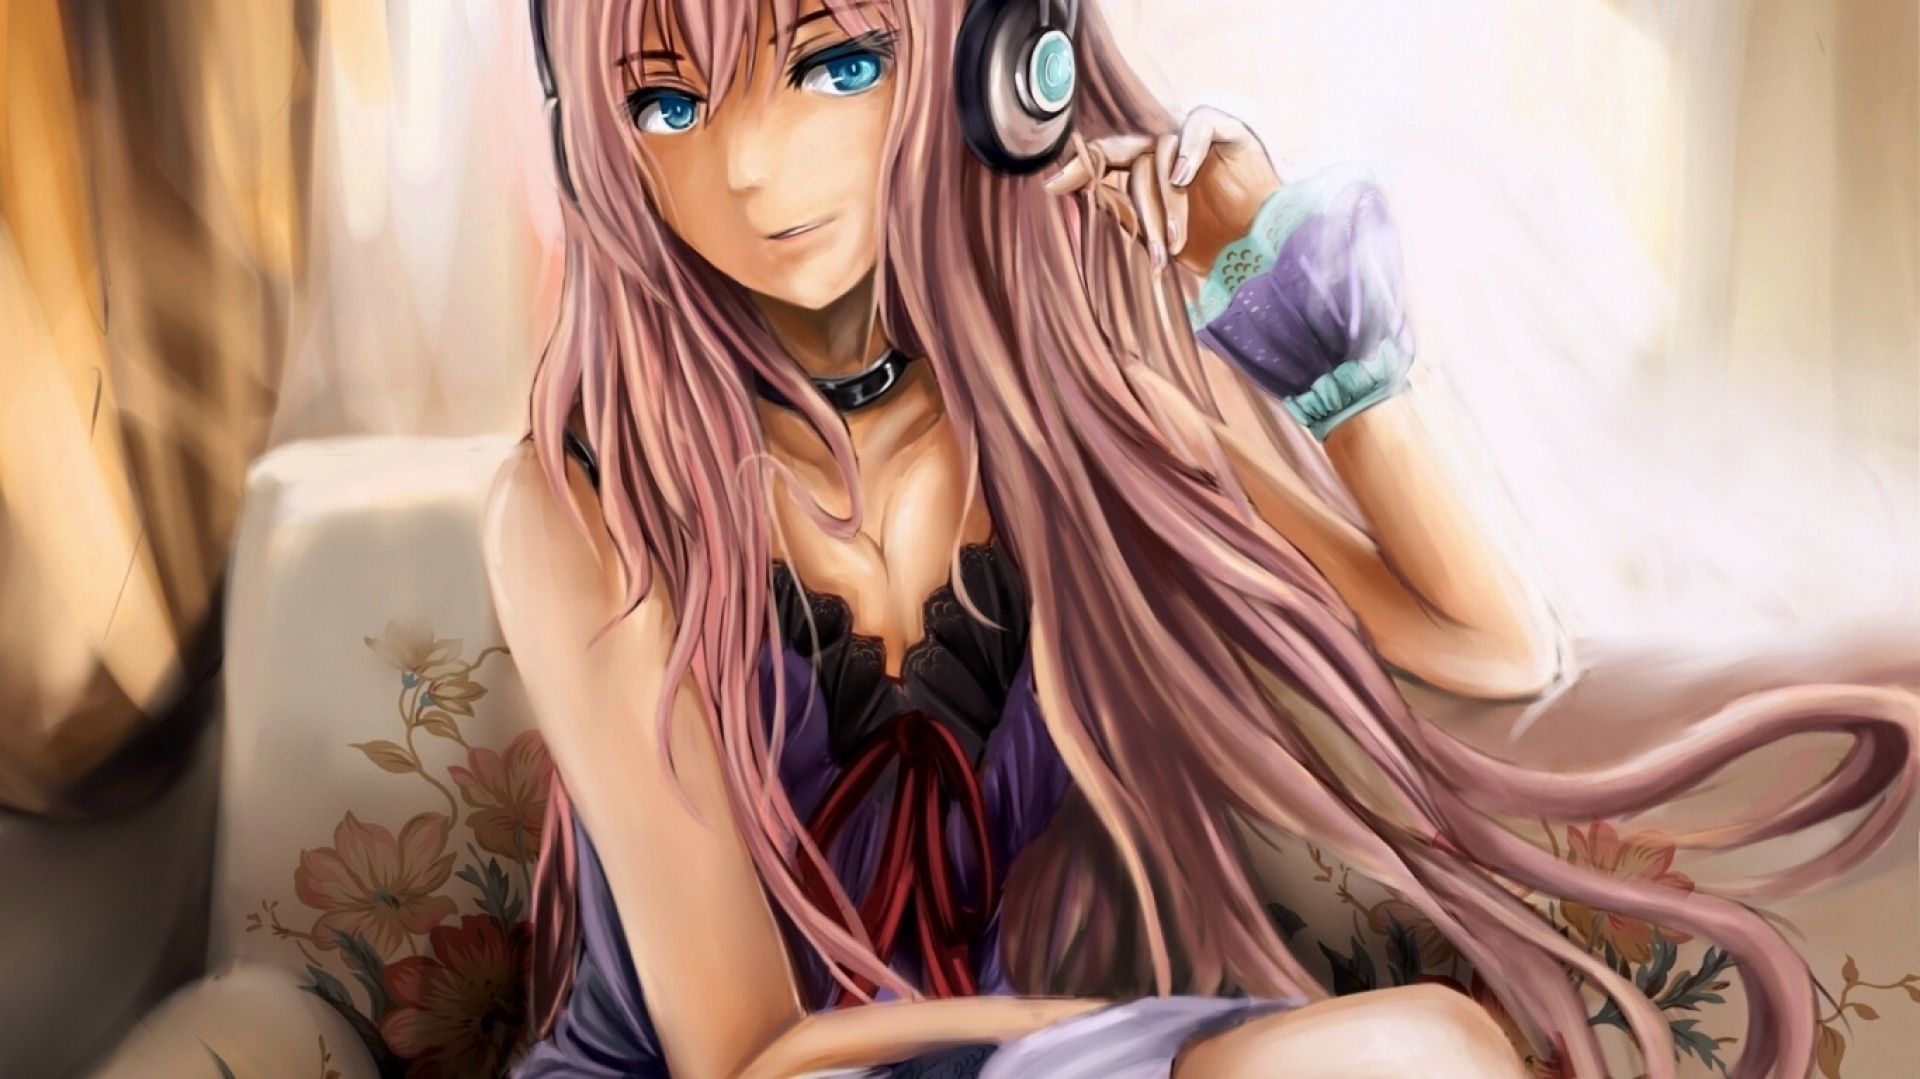 Anime Gamer Girl - Gamer Cute Anime Girl - 500x453 PNG Download - PNGkit